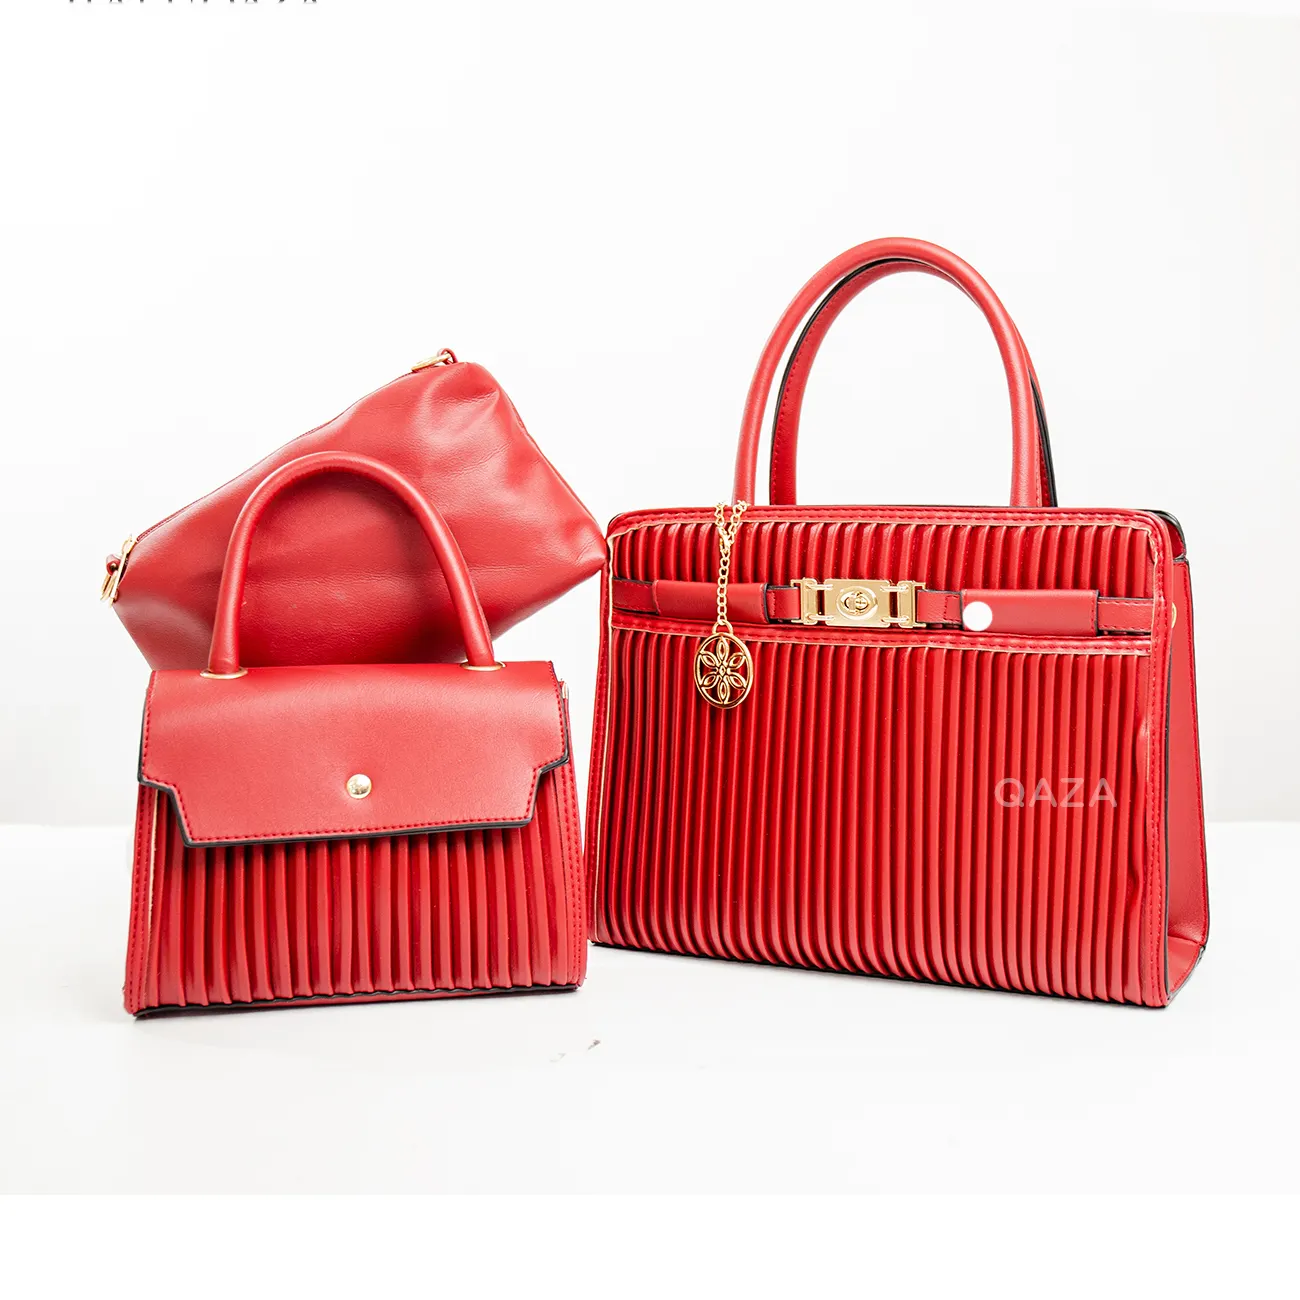 LIYA Large Capacity Fashionable handbag sets 3 pieces lady hand bags para mujeres de bolsas red bags women handbags